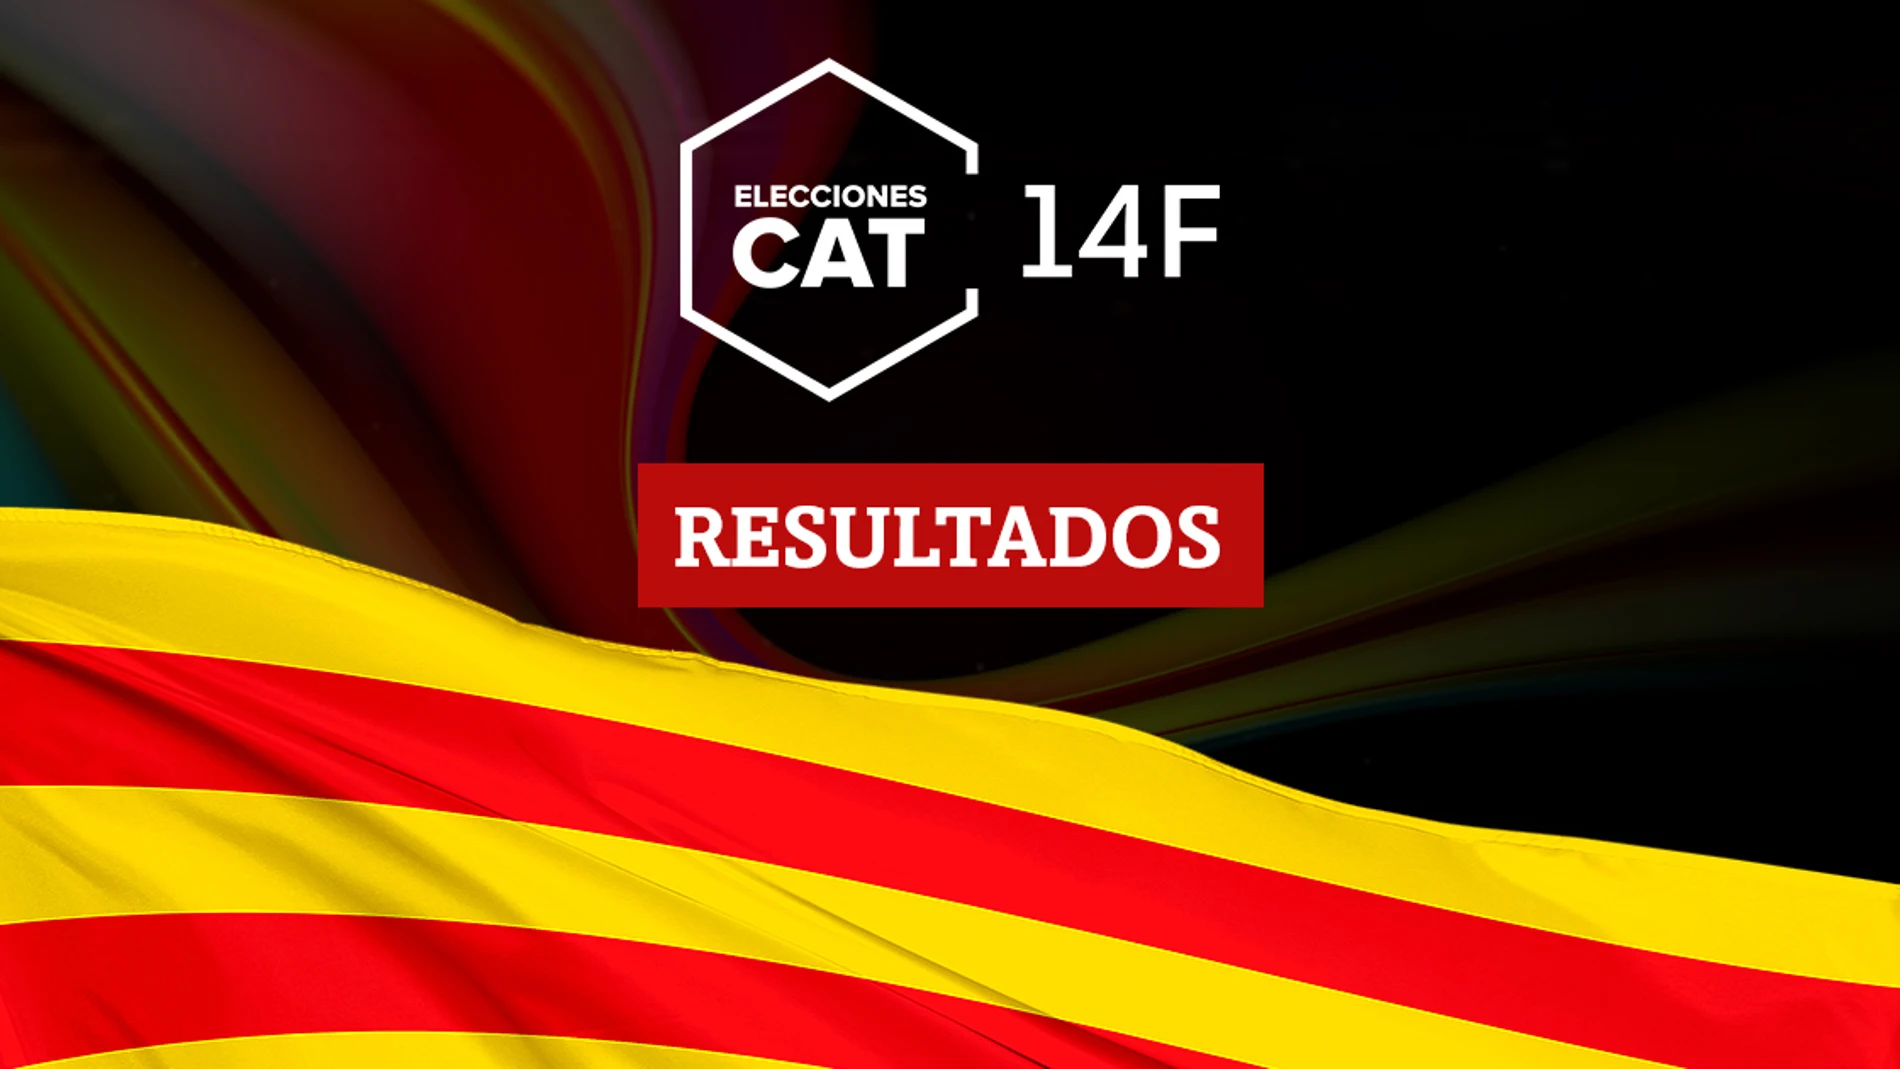 Resultados en Vilafranca del Penedès de las elecciones catalanas del 14F 2021